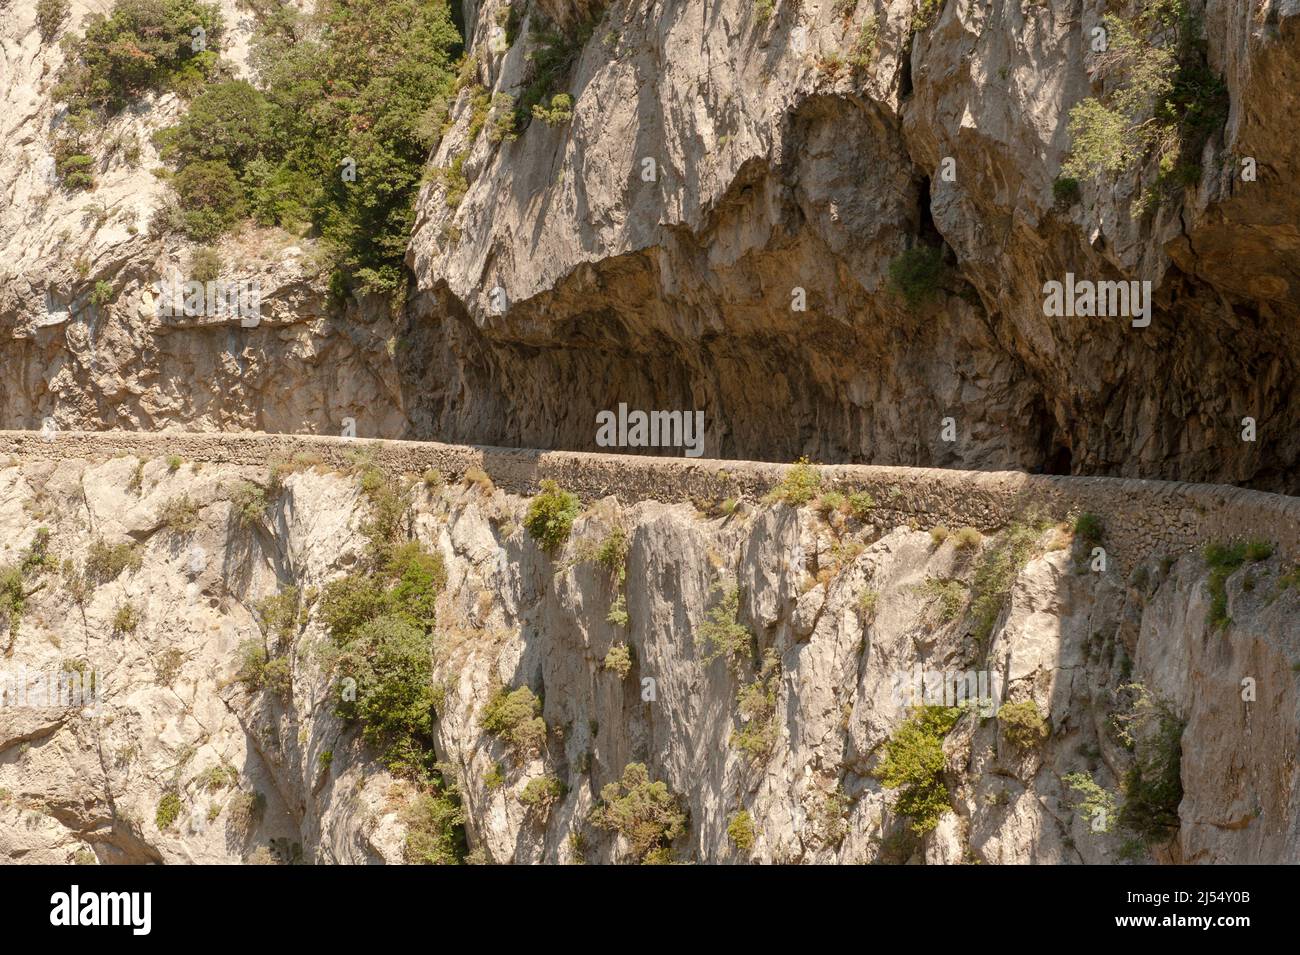 La route sculptée dans le rocher des Gorges de Galamus, France Banque D'Images